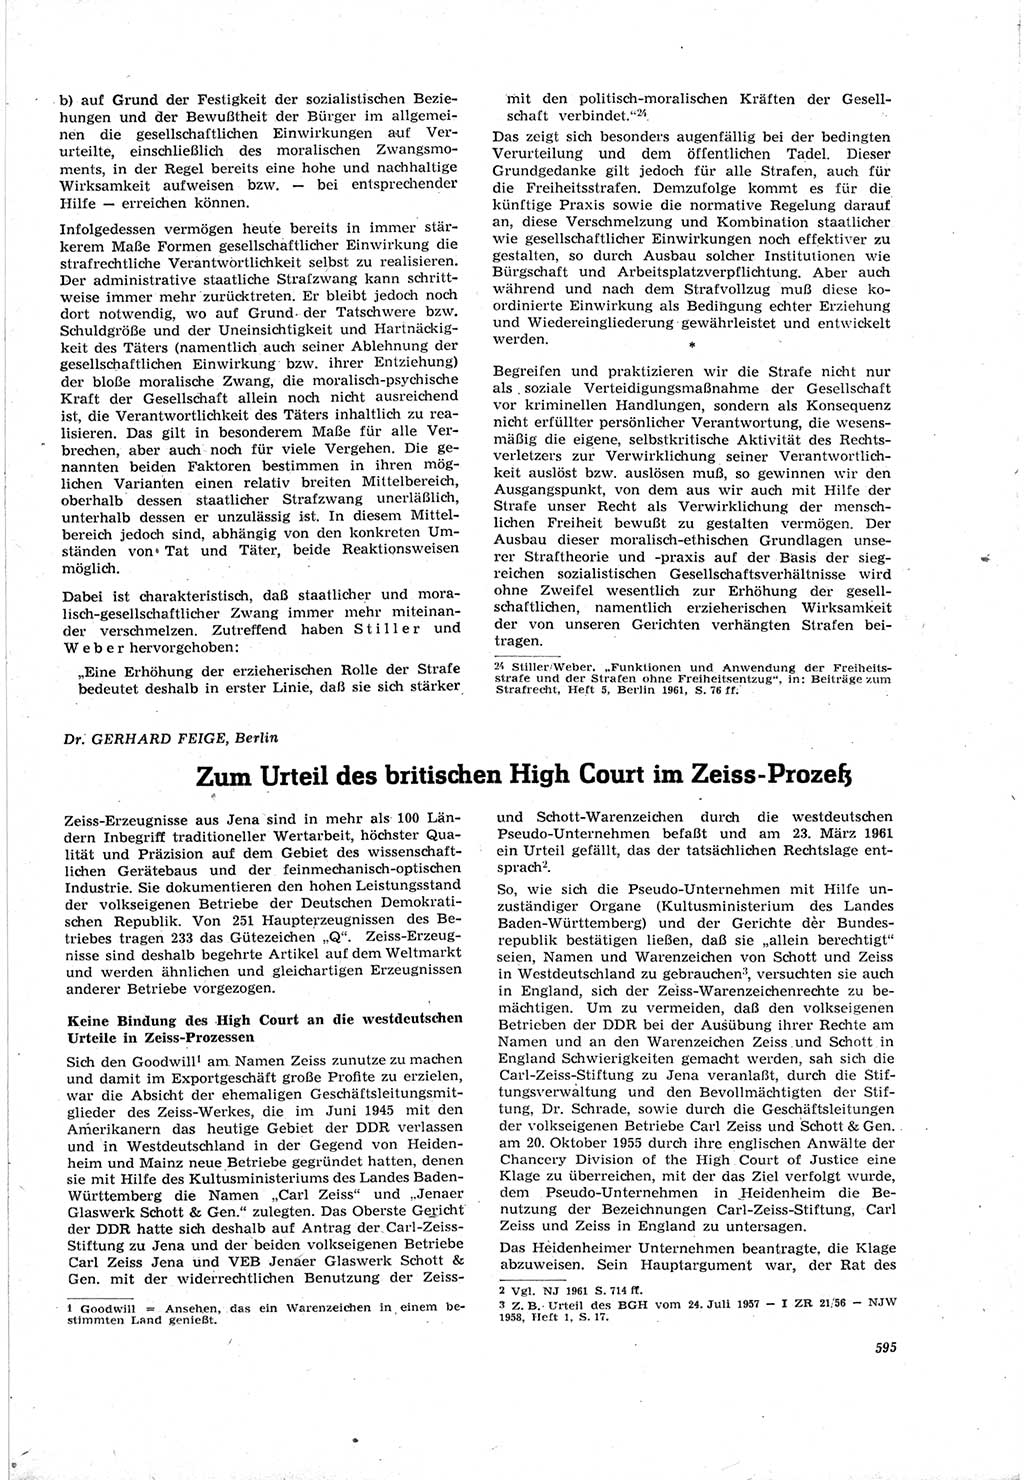 Neue Justiz (NJ), Zeitschrift für Recht und Rechtswissenschaft [Deutsche Demokratische Republik (DDR)], 18. Jahrgang 1964, Seite 595 (NJ DDR 1964, S. 595)